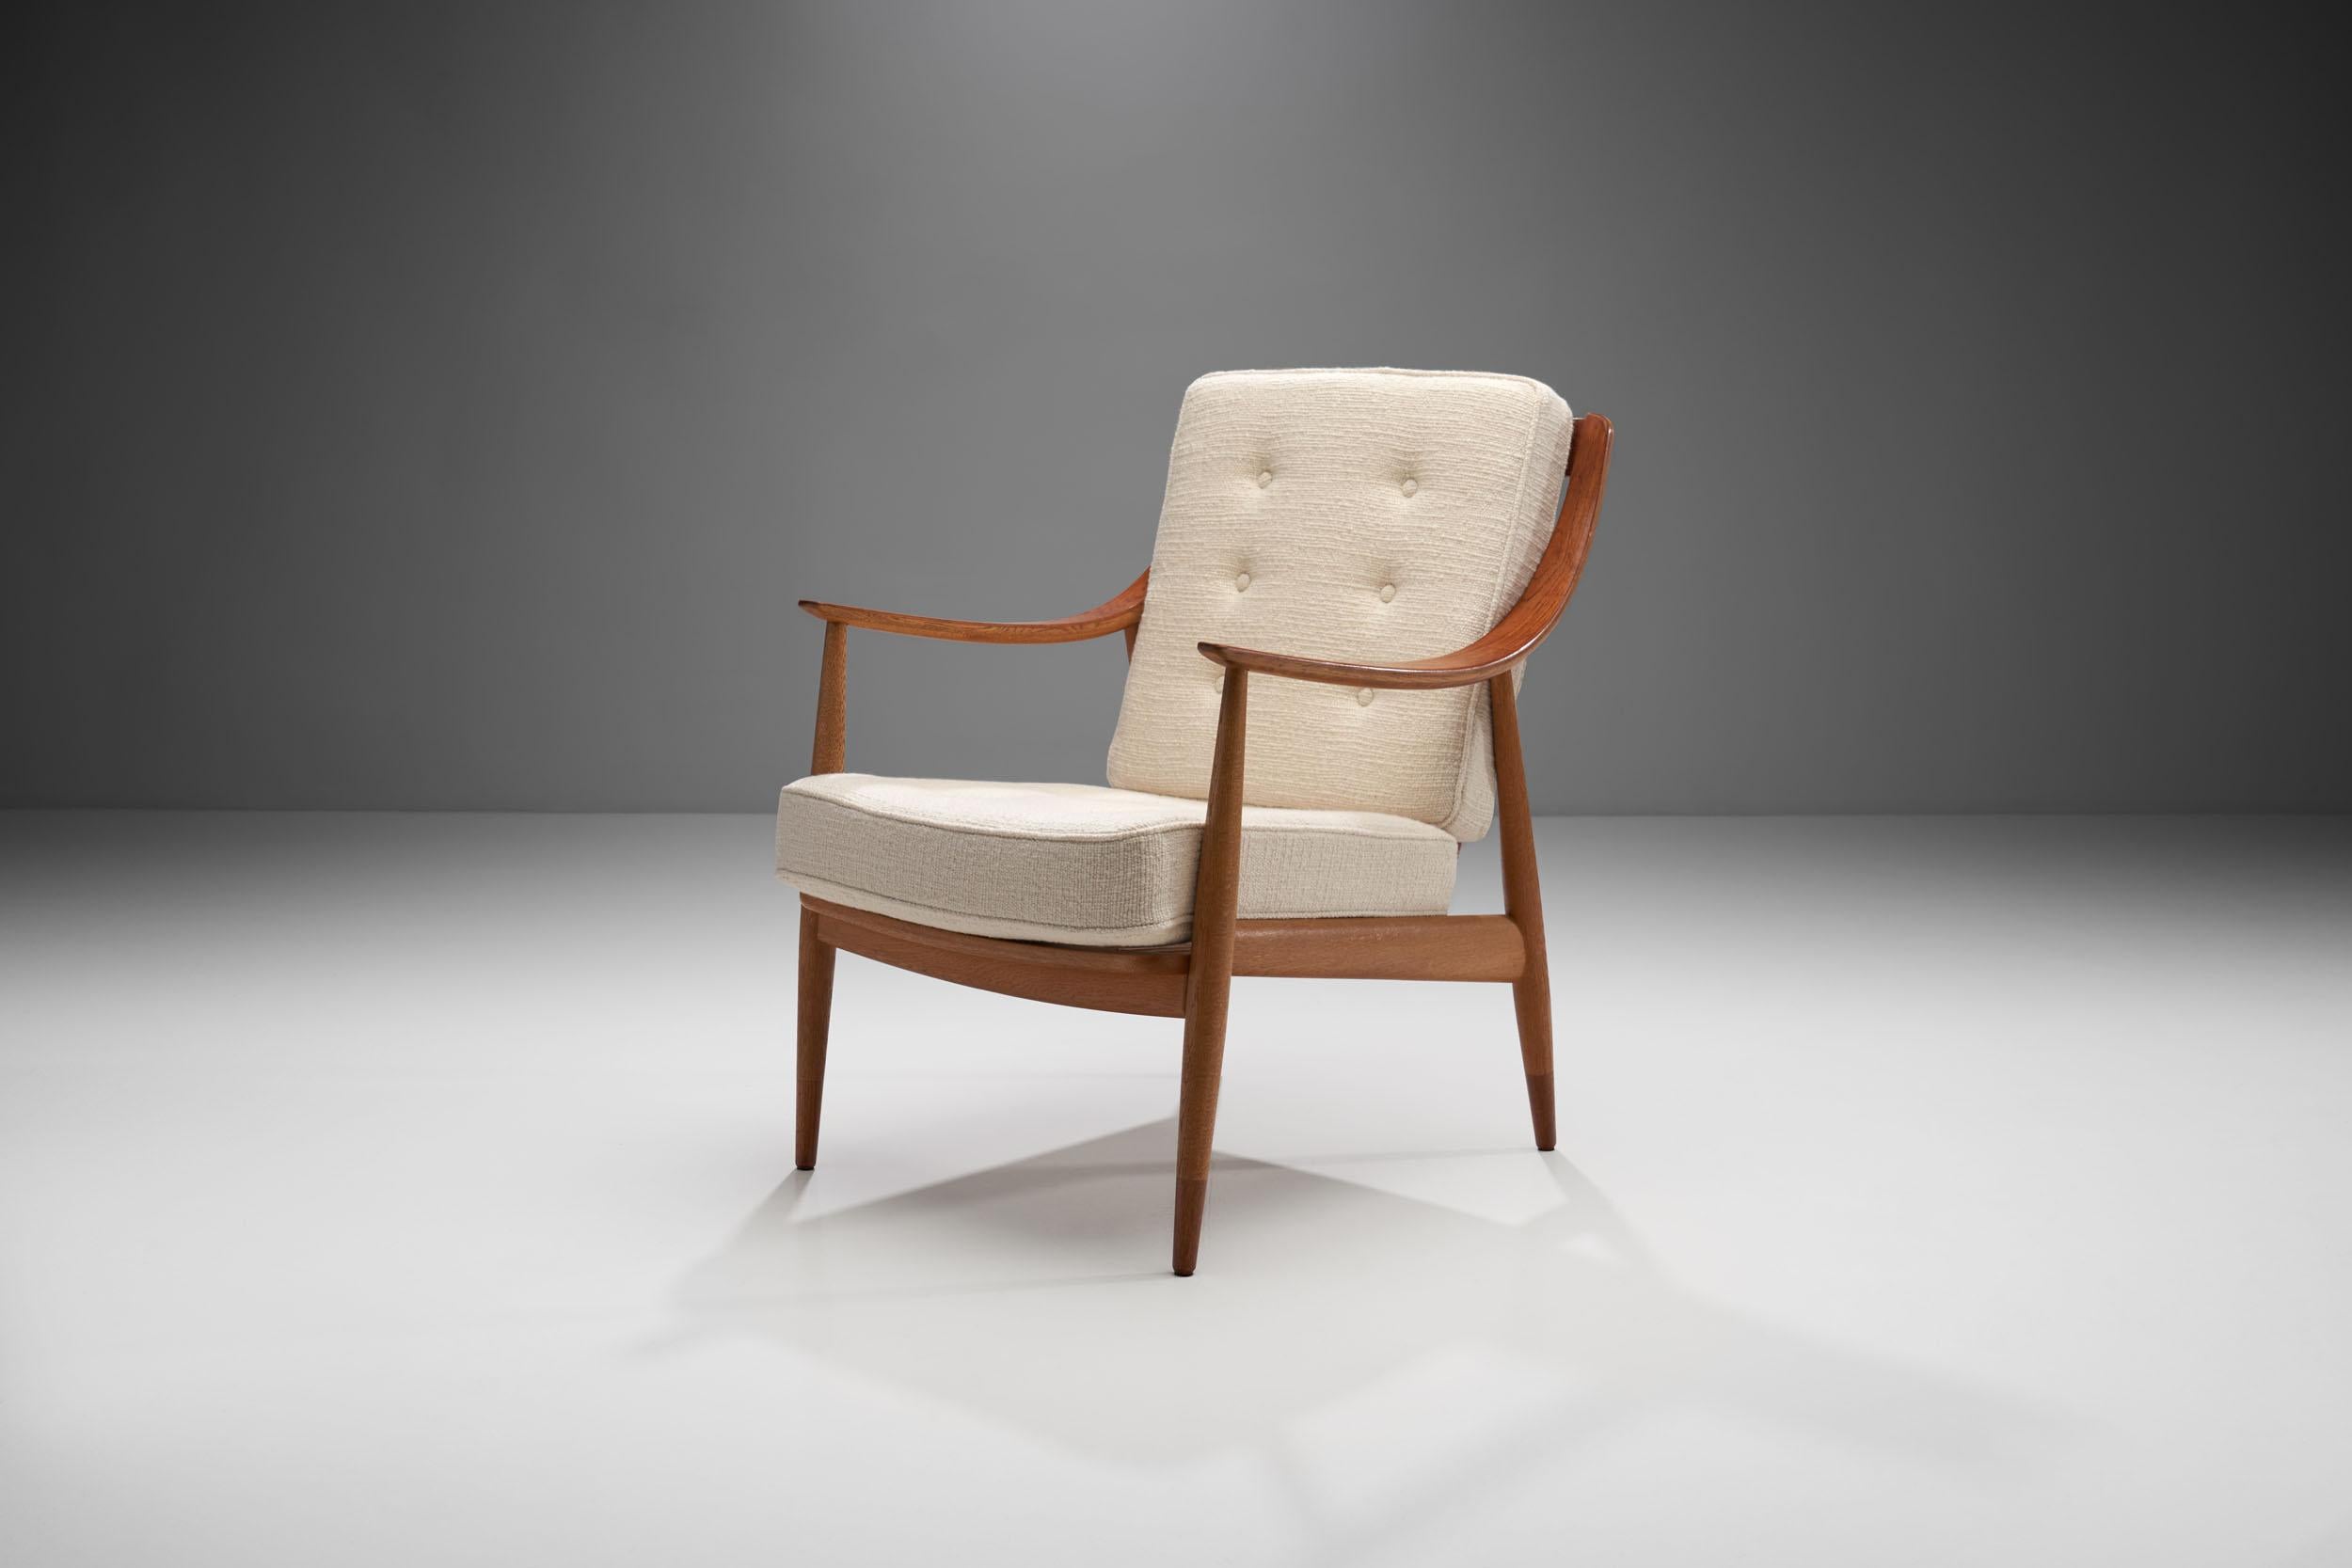 Il s'agit d'un magnifique fauteuil conçu par Peter Hvidt et Orla Mølgaard-Nielsen, modèle 